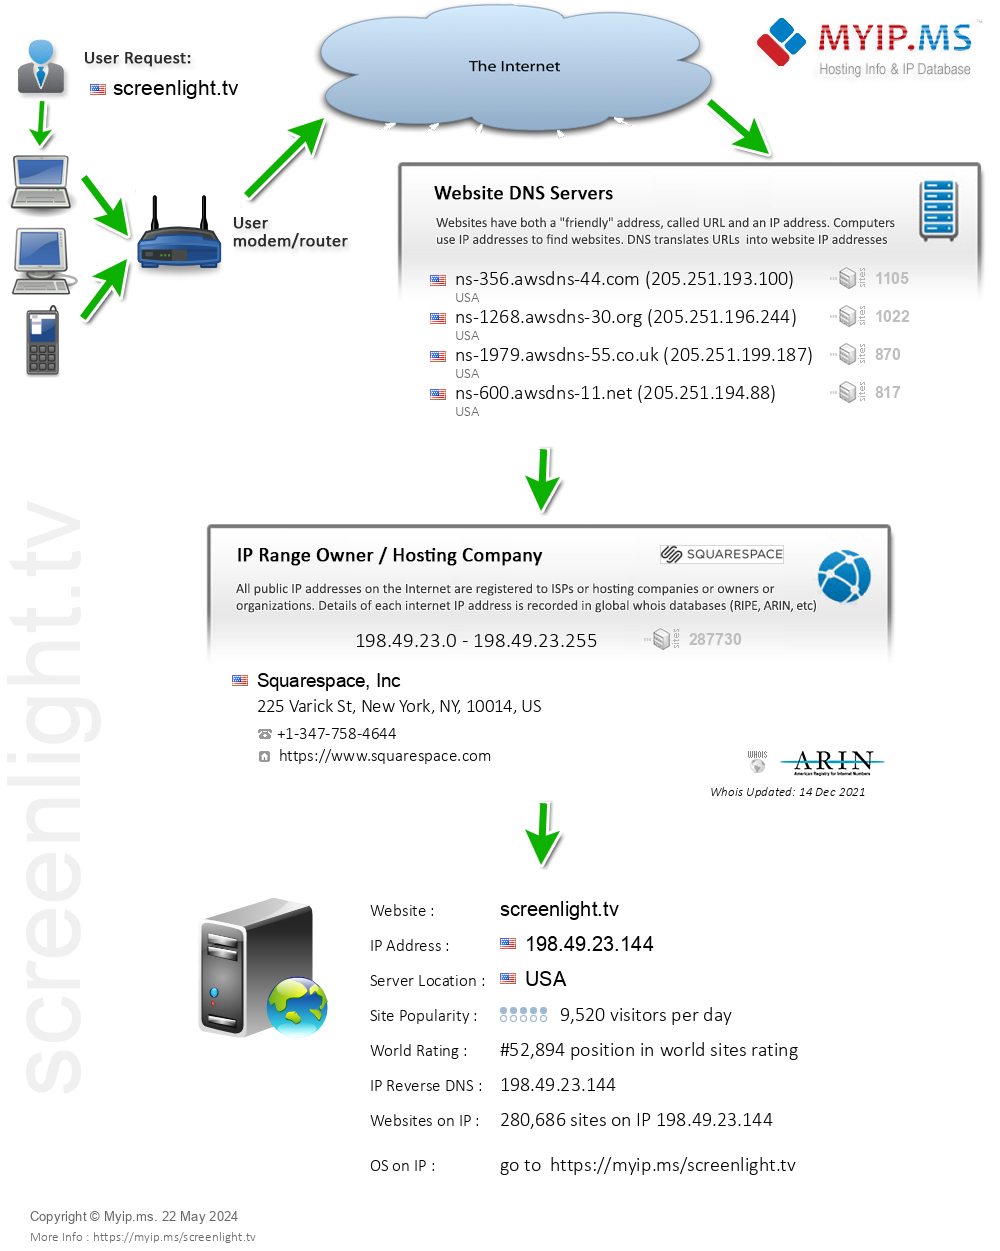 Screenlight.tv - Website Hosting Visual IP Diagram